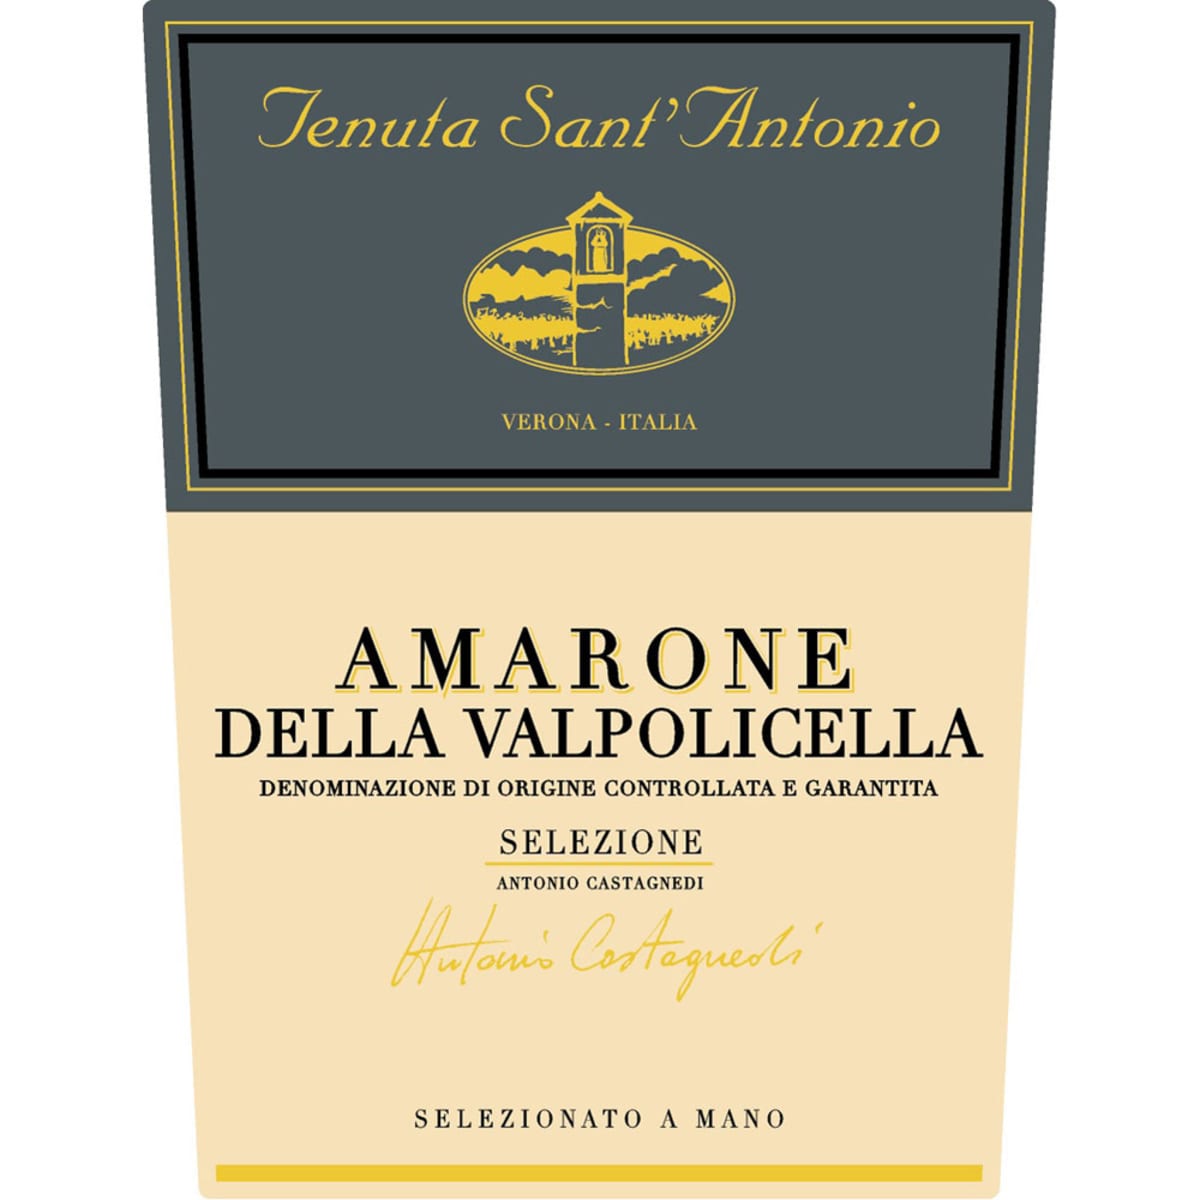 Tenuta Sant'Antonio Amarone Selezione Antonio Castagnedi 2011 Front Label